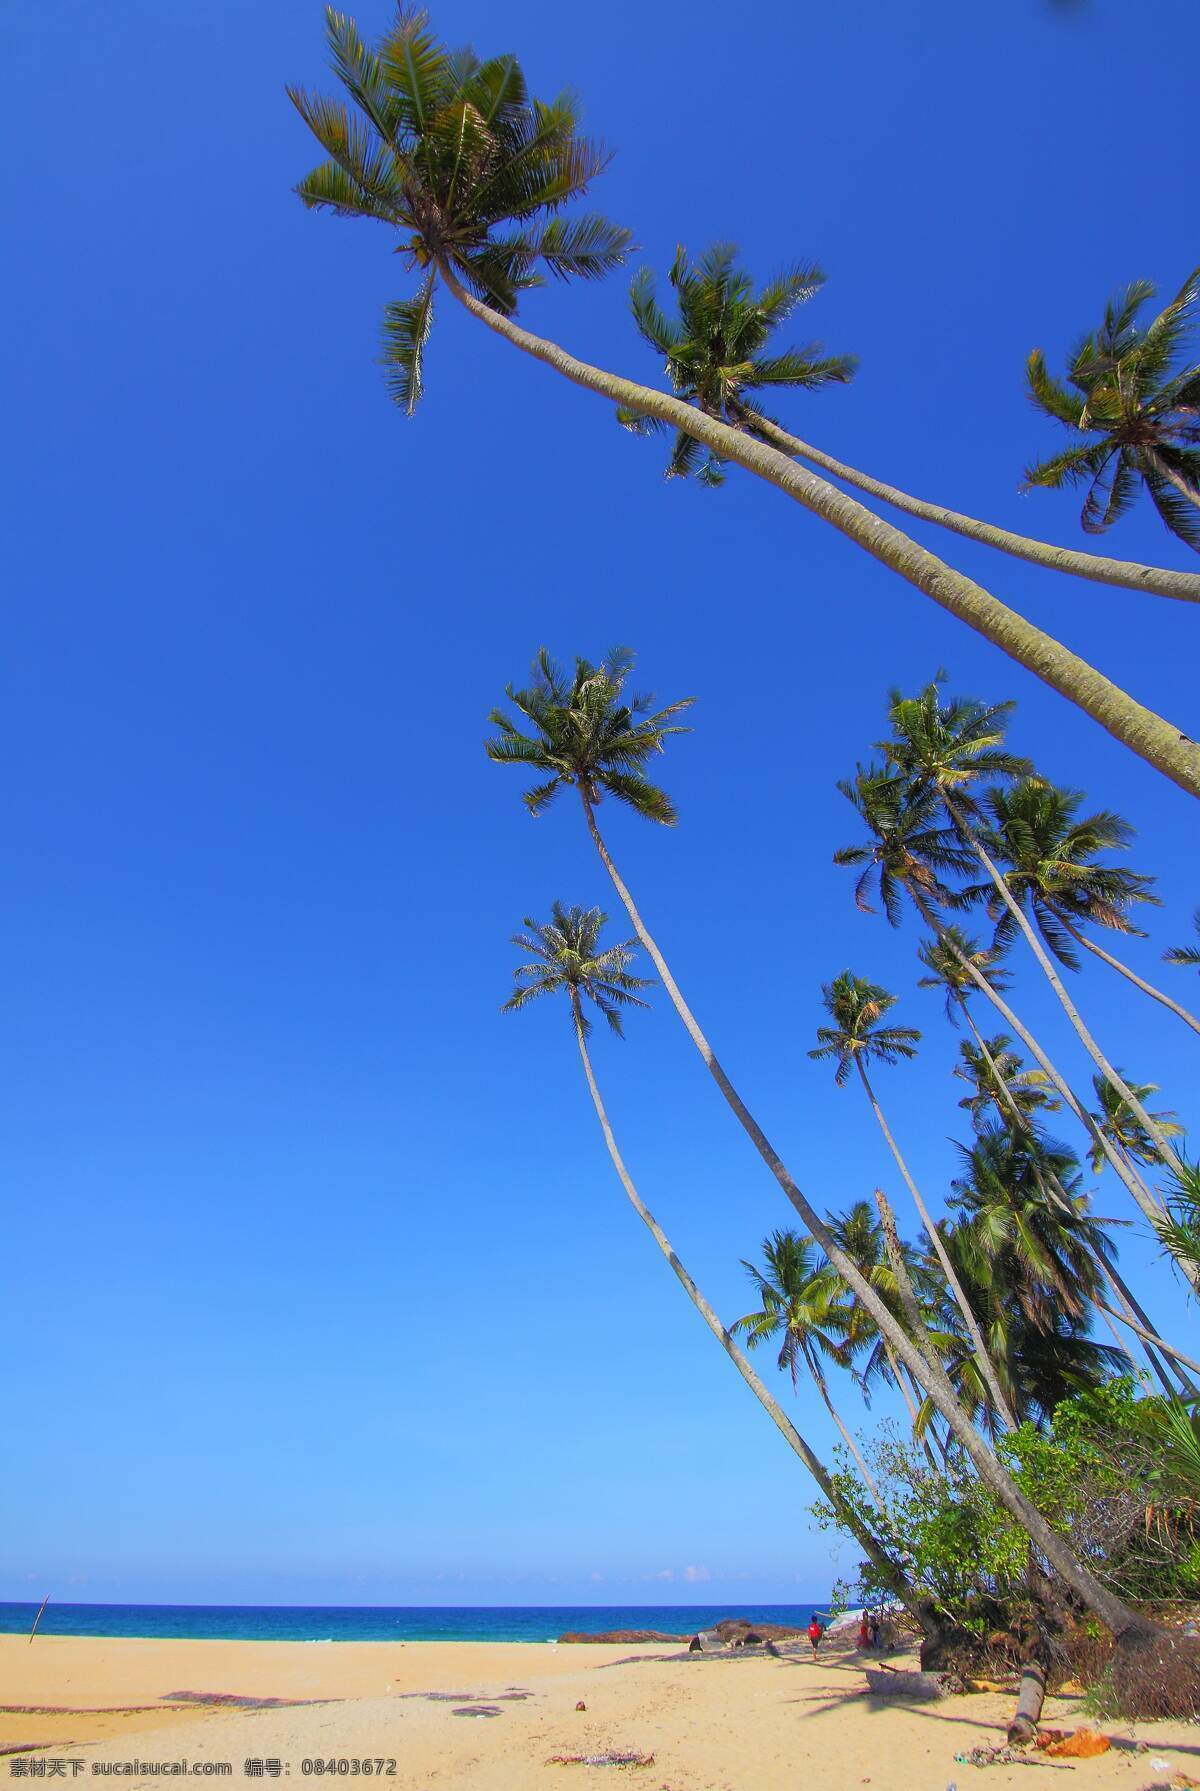 椰树 壁纸 桌面 背景 背景图 唯美 浪漫 蓝色 绿色 海岛 岛上 海水 大海 海 海边 小岛 风景 高清 竖图 水 石头 沙滩 椰子 椰子树 树 自然景观 山水风景